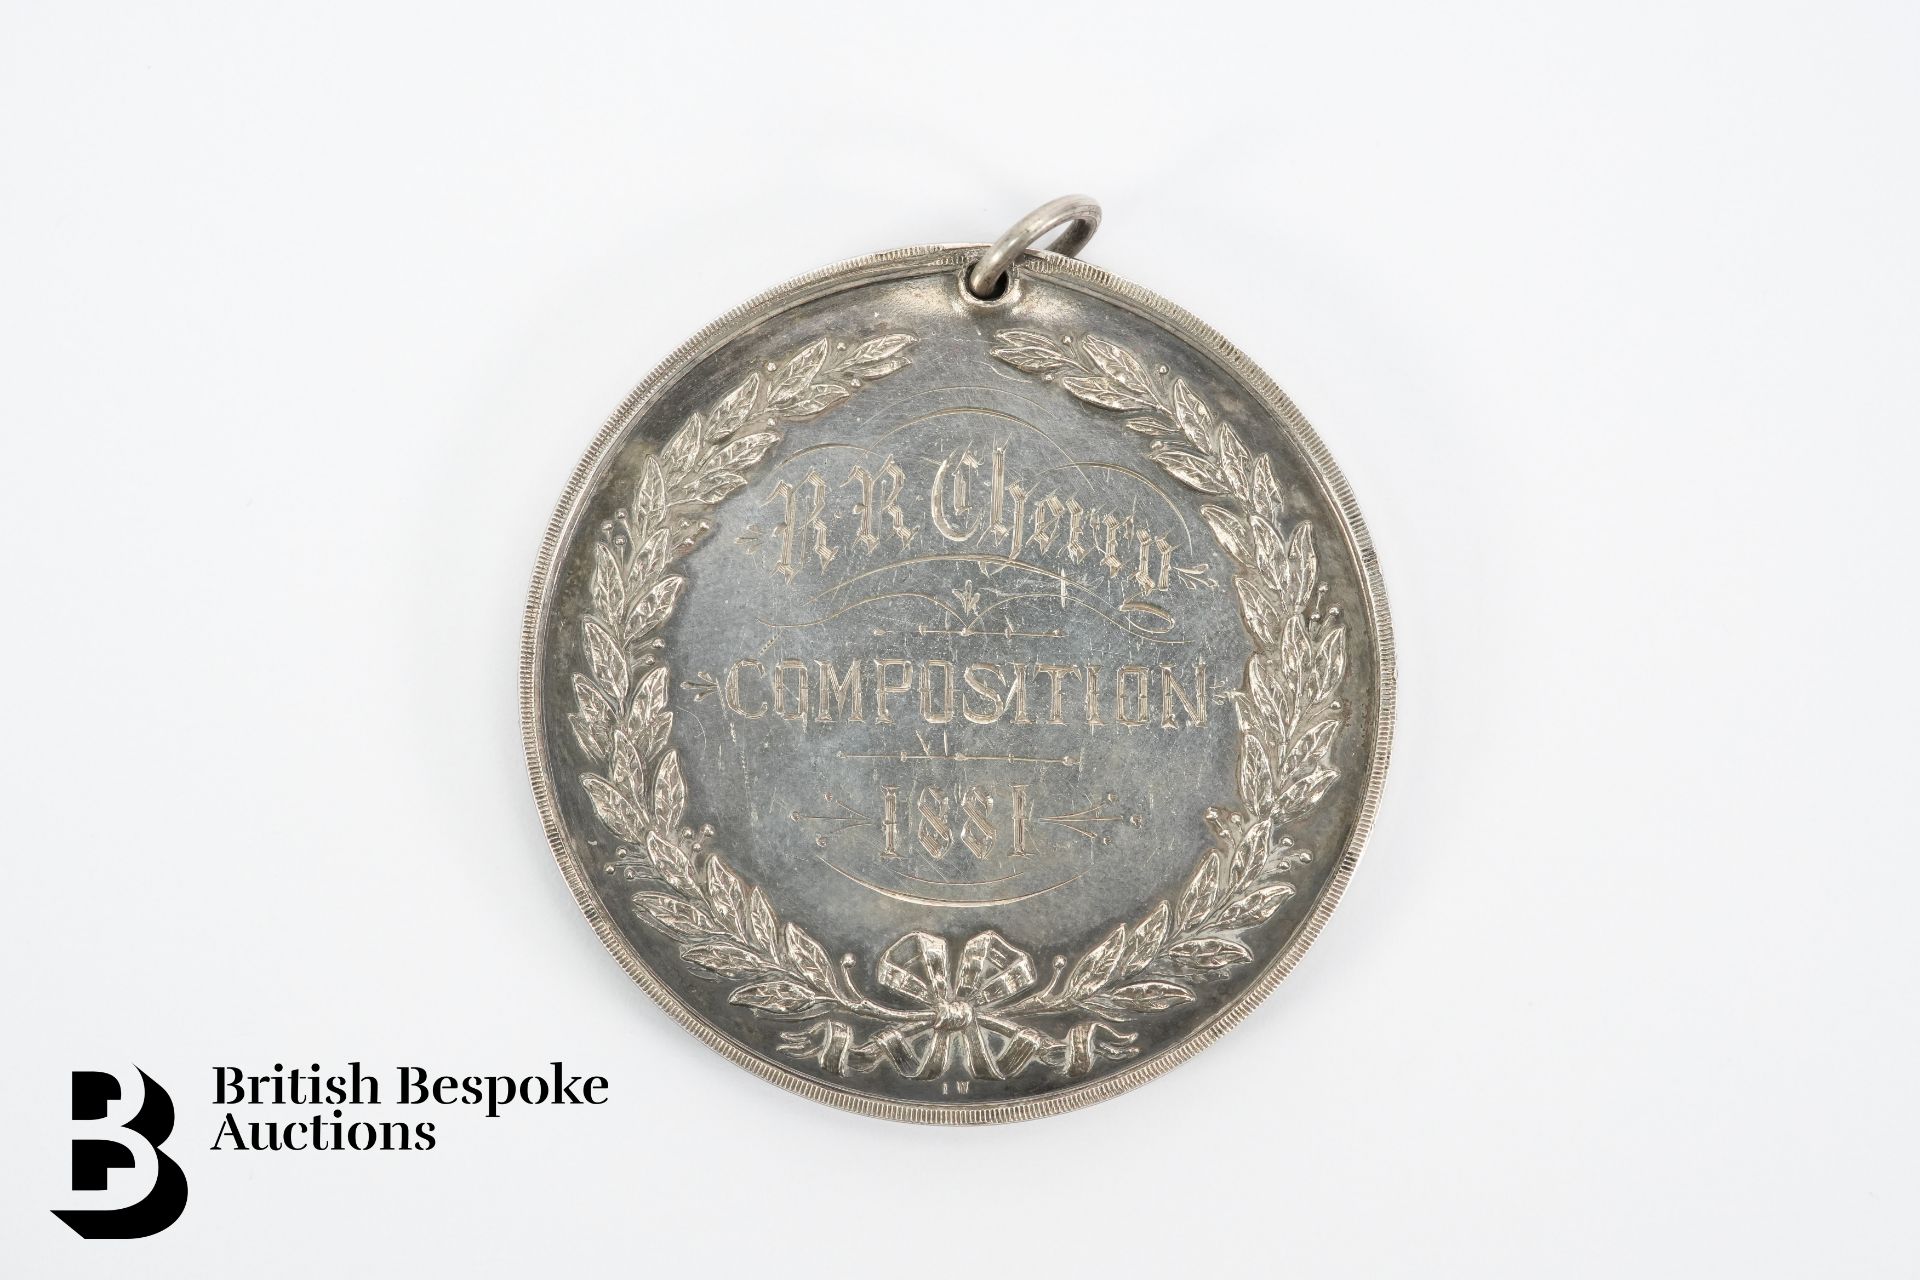 University of Dublin Philosophical Society Medallion - Image 2 of 2